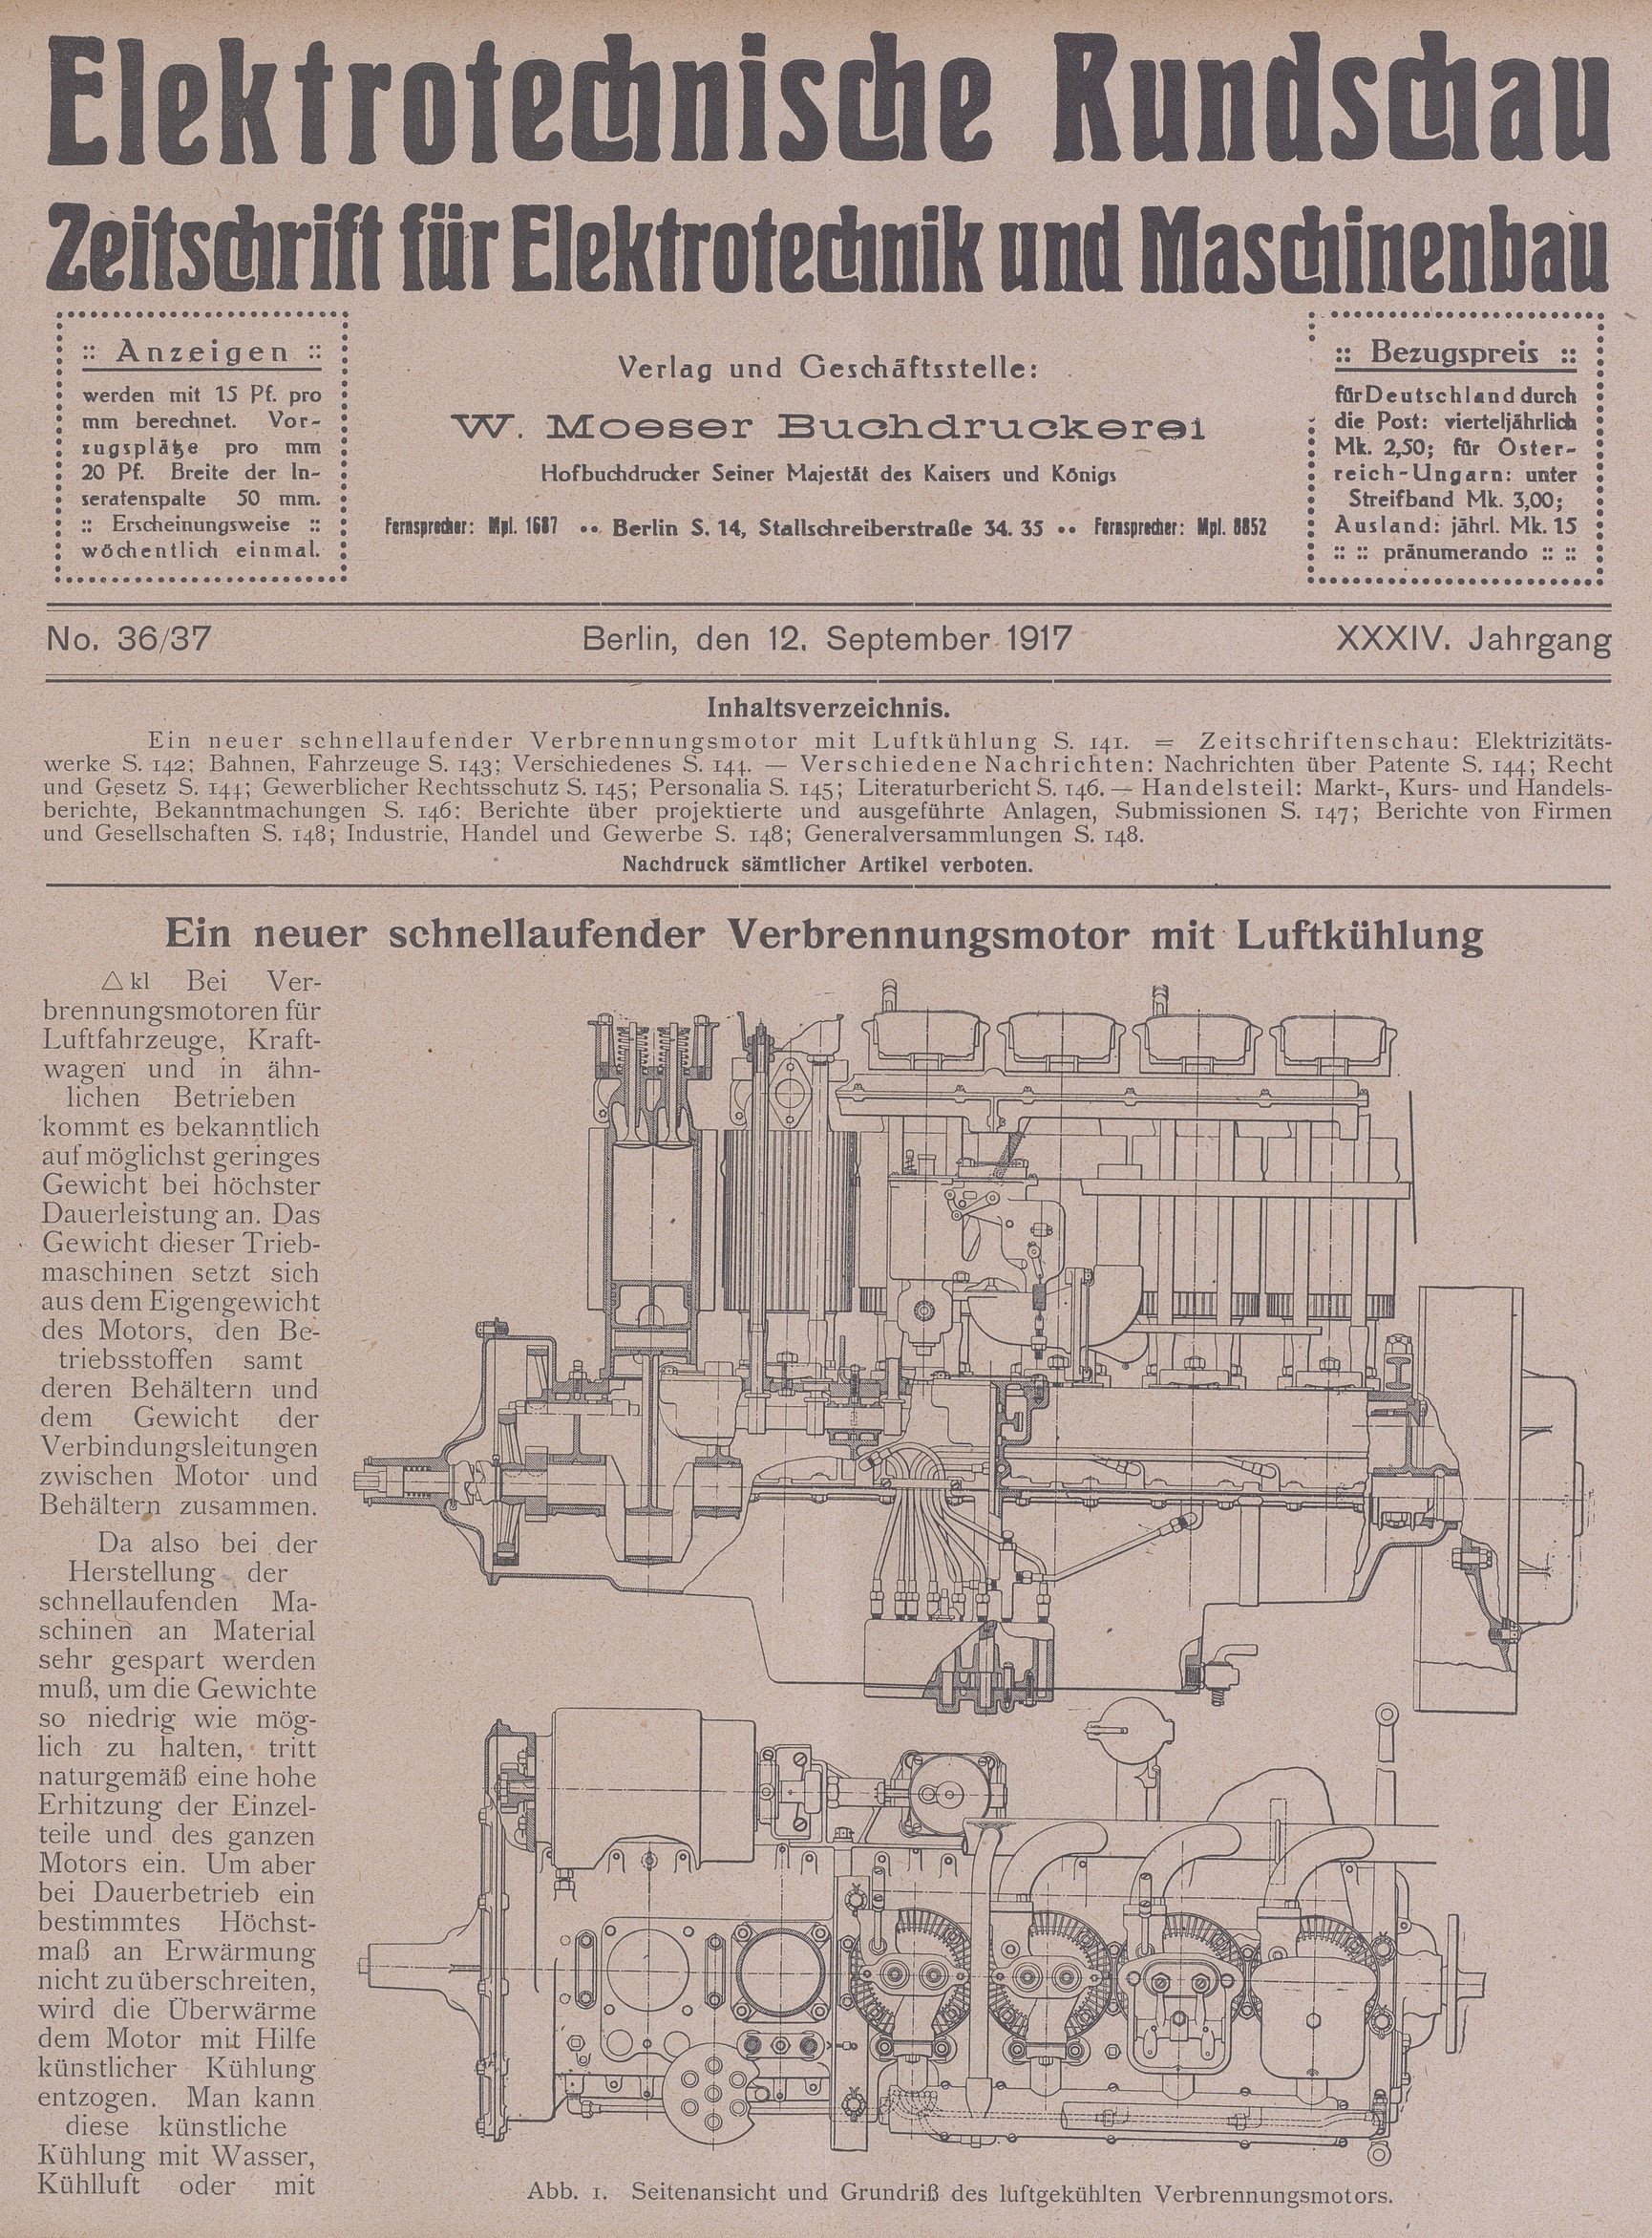 Elektrotechnische Rundschau : Zeitschrift für Elektrotechnik und Maschinenbau + Polytechnische Rundschau, No. 36/37, XXXIV. Jahrgang